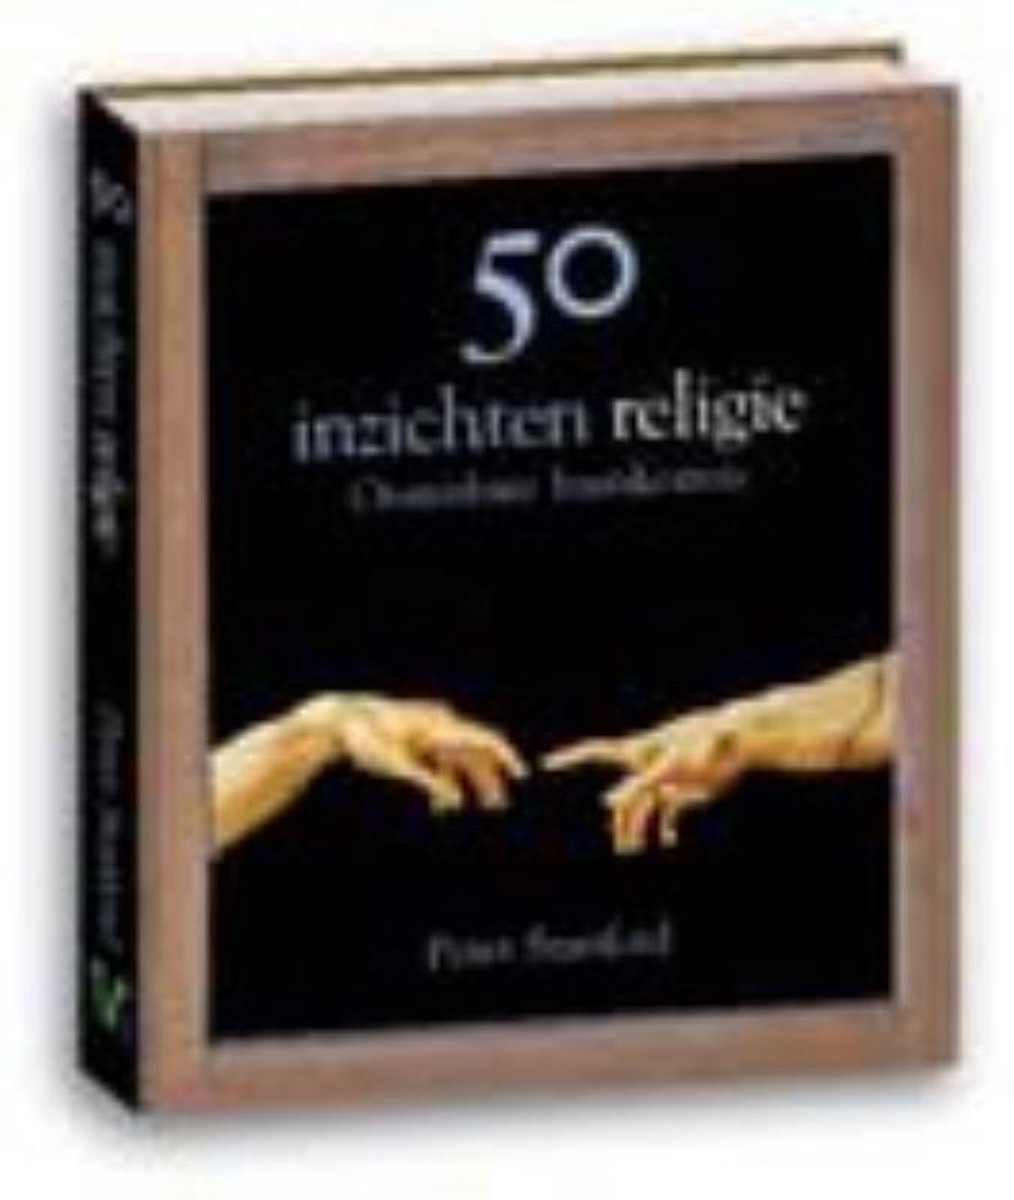 50 inzichten religie - Peter Stanford